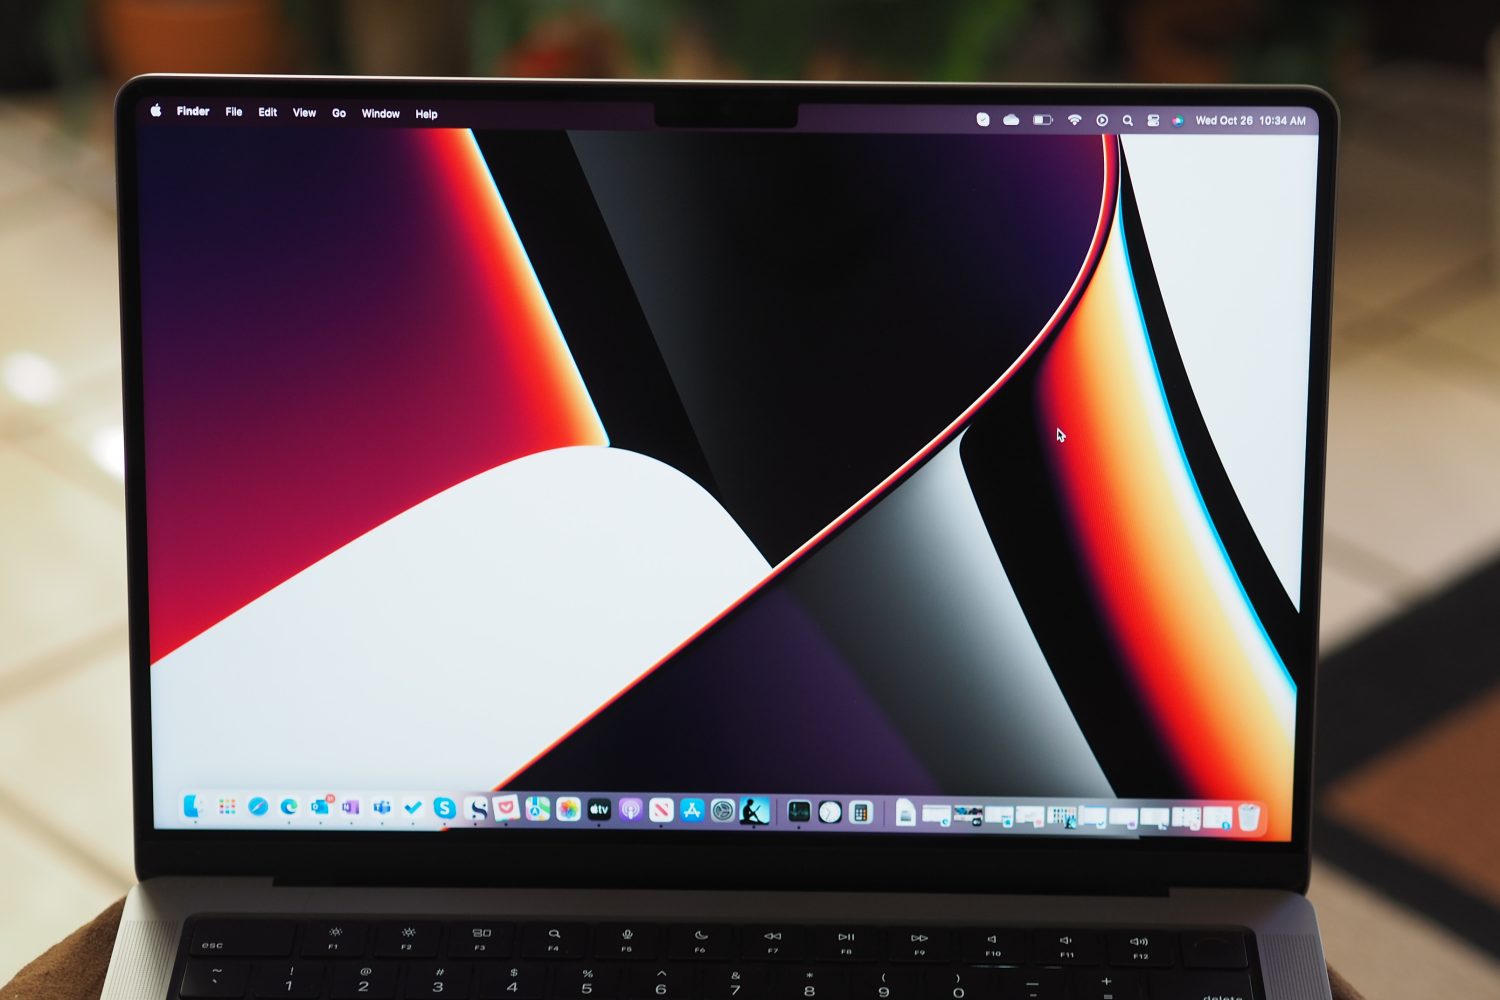 Vista frontal do Apple MacBook Pro 14 mostrando a tela.